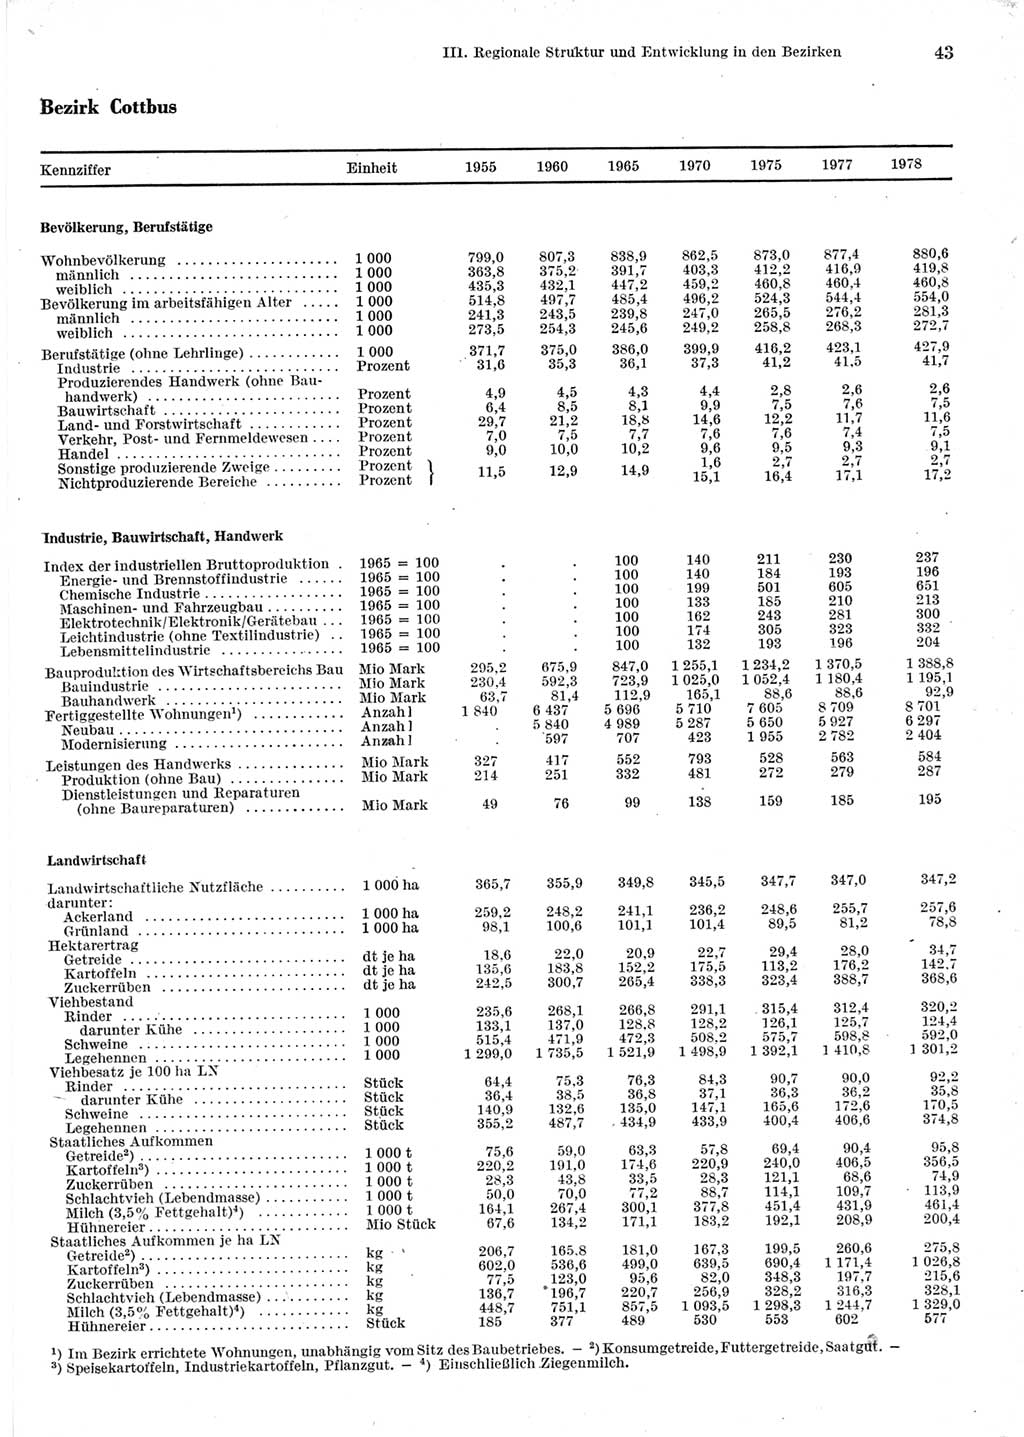 Statistisches Jahrbuch der Deutschen Demokratischen Republik (DDR) 1979, Seite 43 (Stat. Jb. DDR 1979, S. 43)